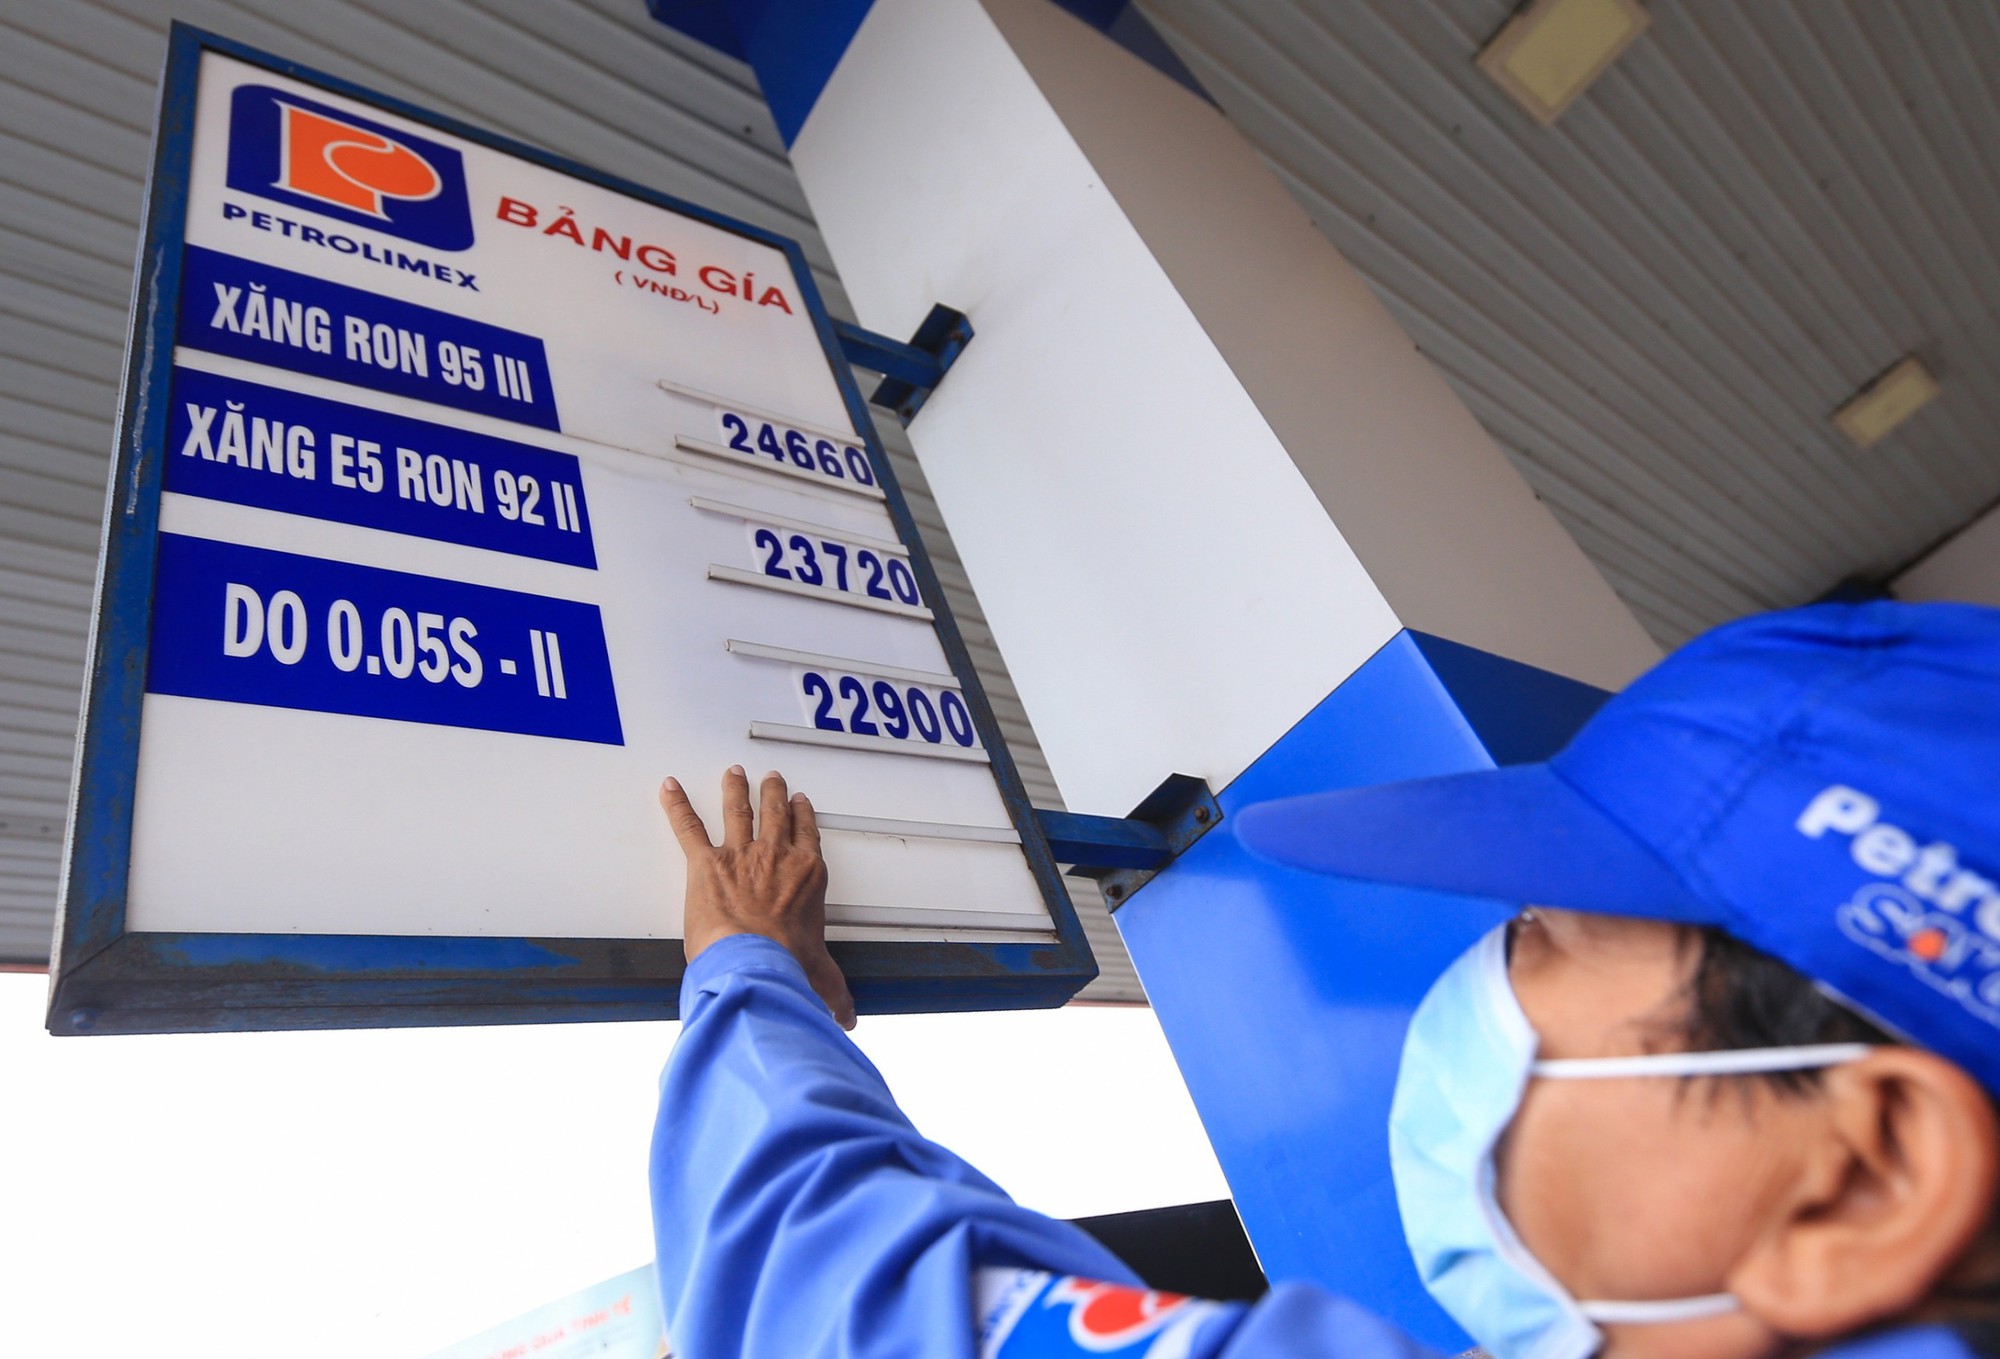 Giá dầu sẽ tăng vượt giá xăng trong kì điều chỉnh ngày 5/9 - Ảnh 2.